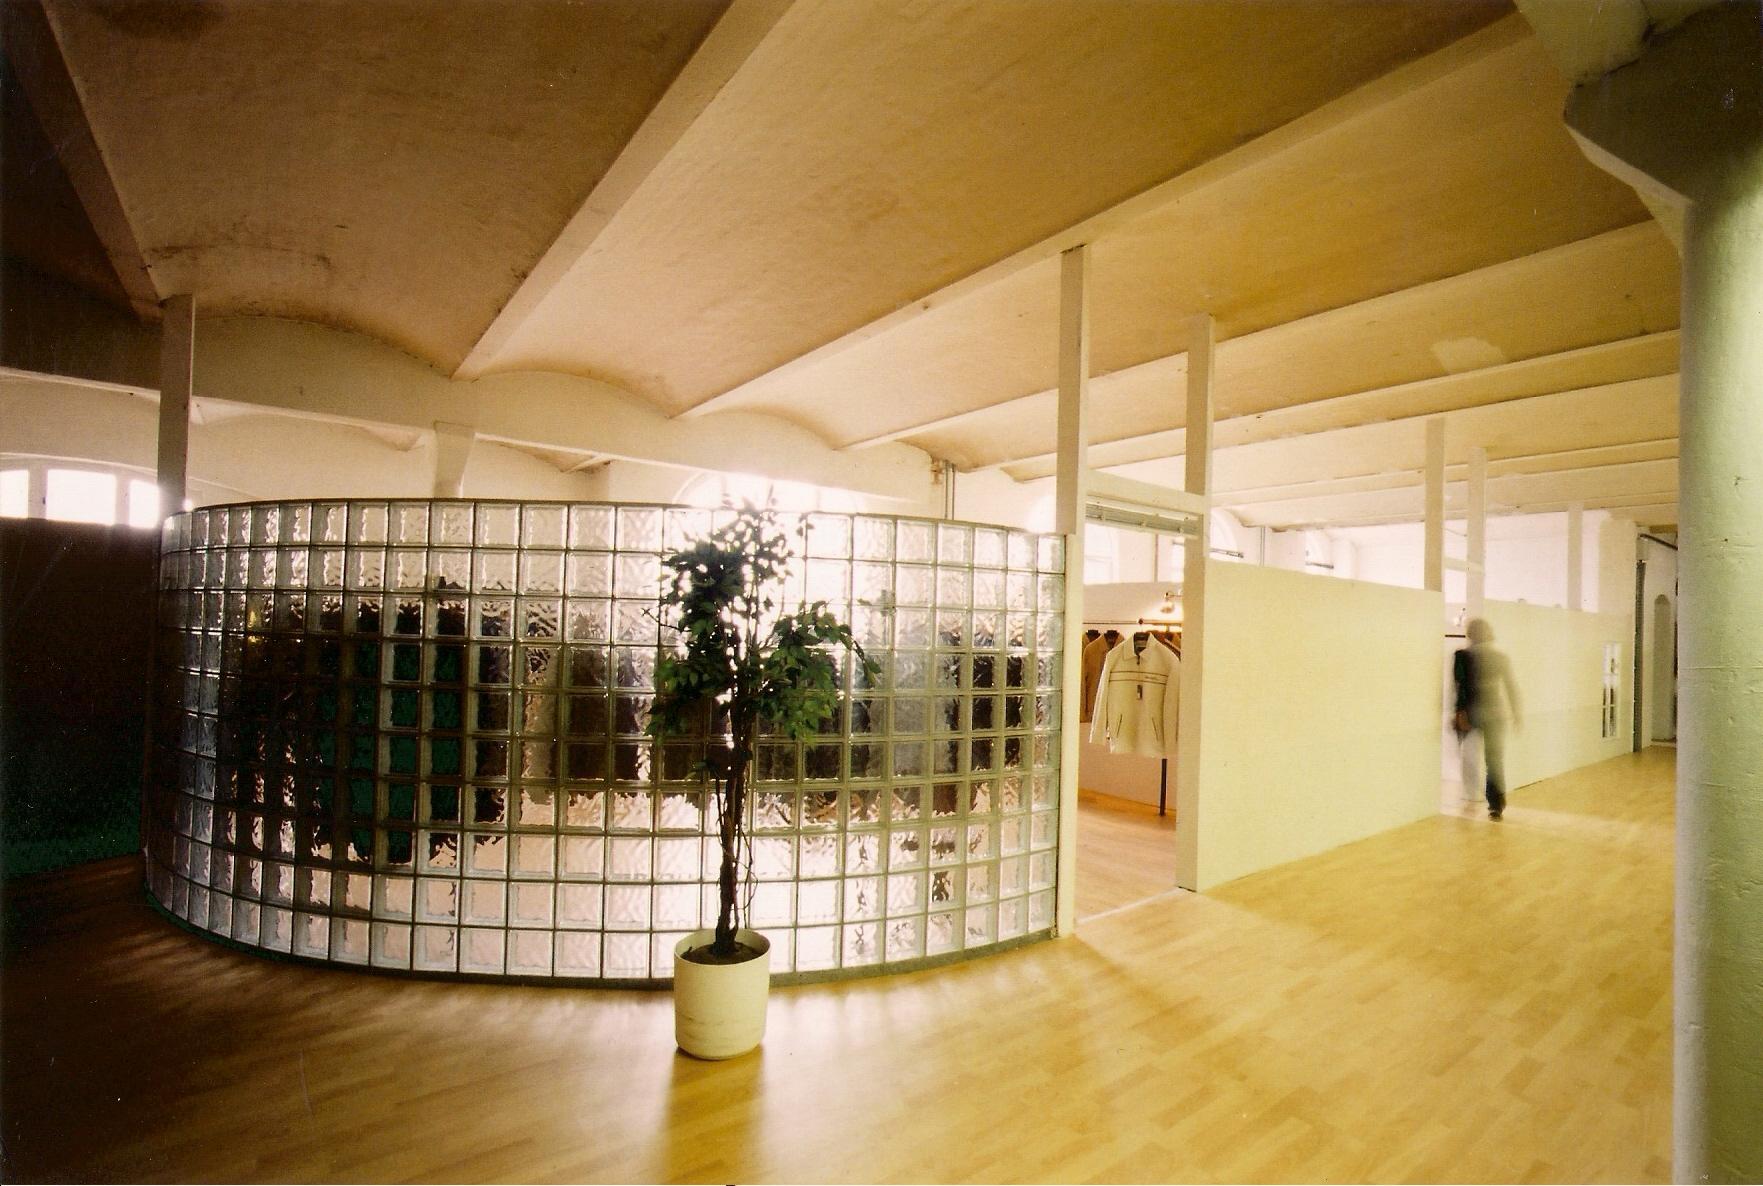 Showroom in  Berlin designed by Phil Boyd #raumgestaltung ©DEERPHIL Marketing